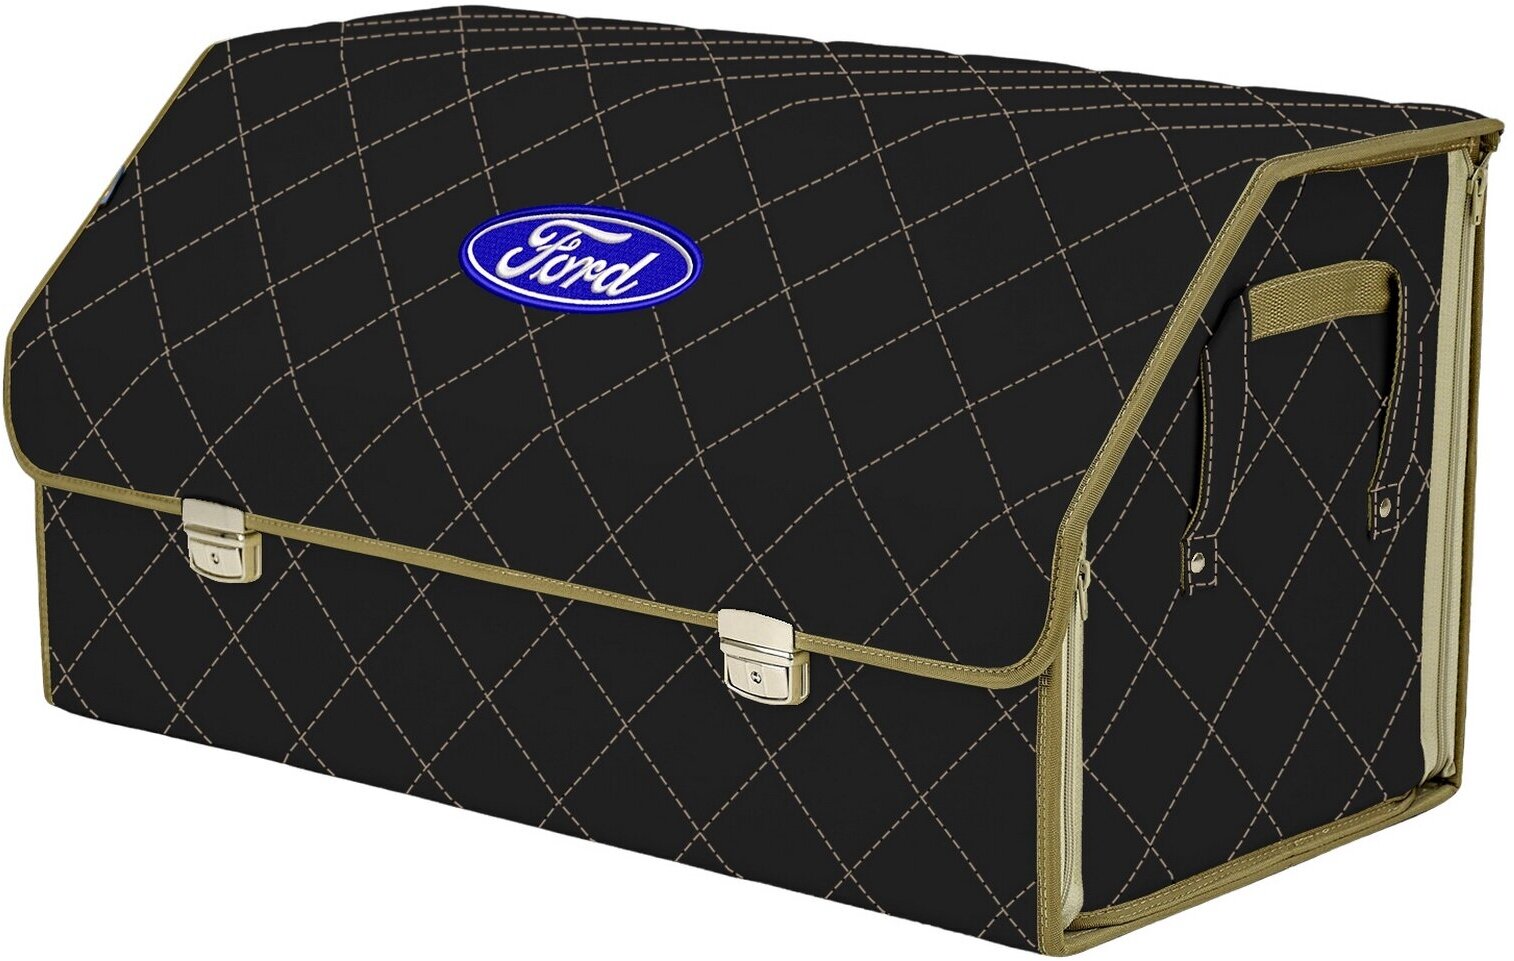 Органайзер-саквояж в багажник "Союз Премиум" (размер XL Plus). Цвет: черный с бежевой прострочкой Ромб и вышивкой Ford (Форд).